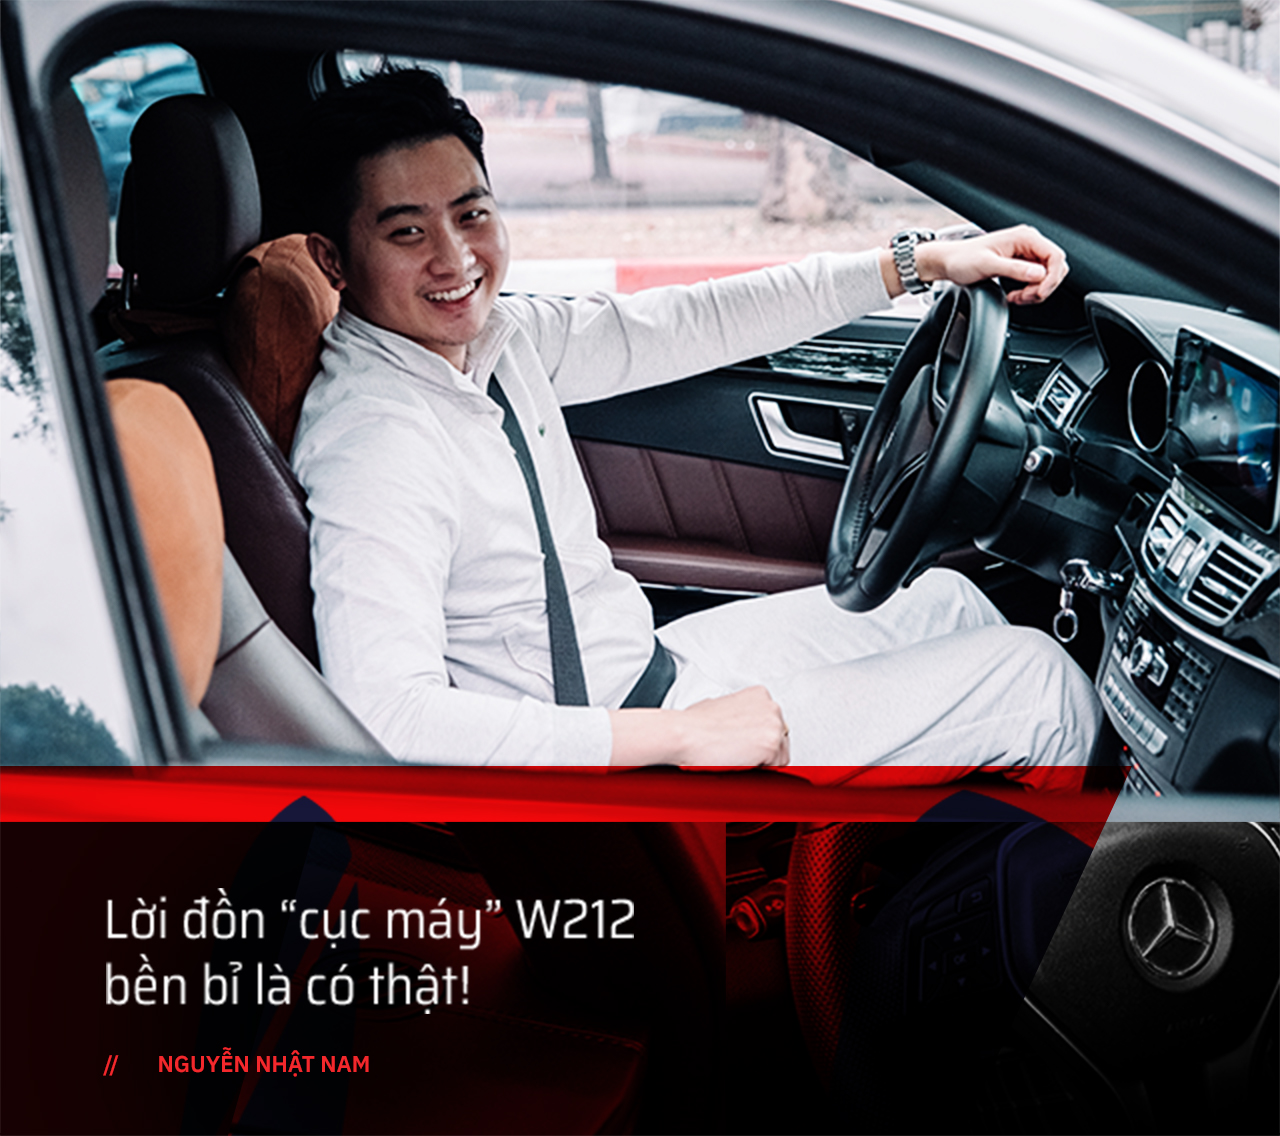 Bán Mazda6 vừa mua để tậu Mercedes cũ, người dùng chia sẻ: ‘Chơi xe Đức cũ cần tiền dự phòng và đừng mong mua được xe zin’ - Ảnh 6.